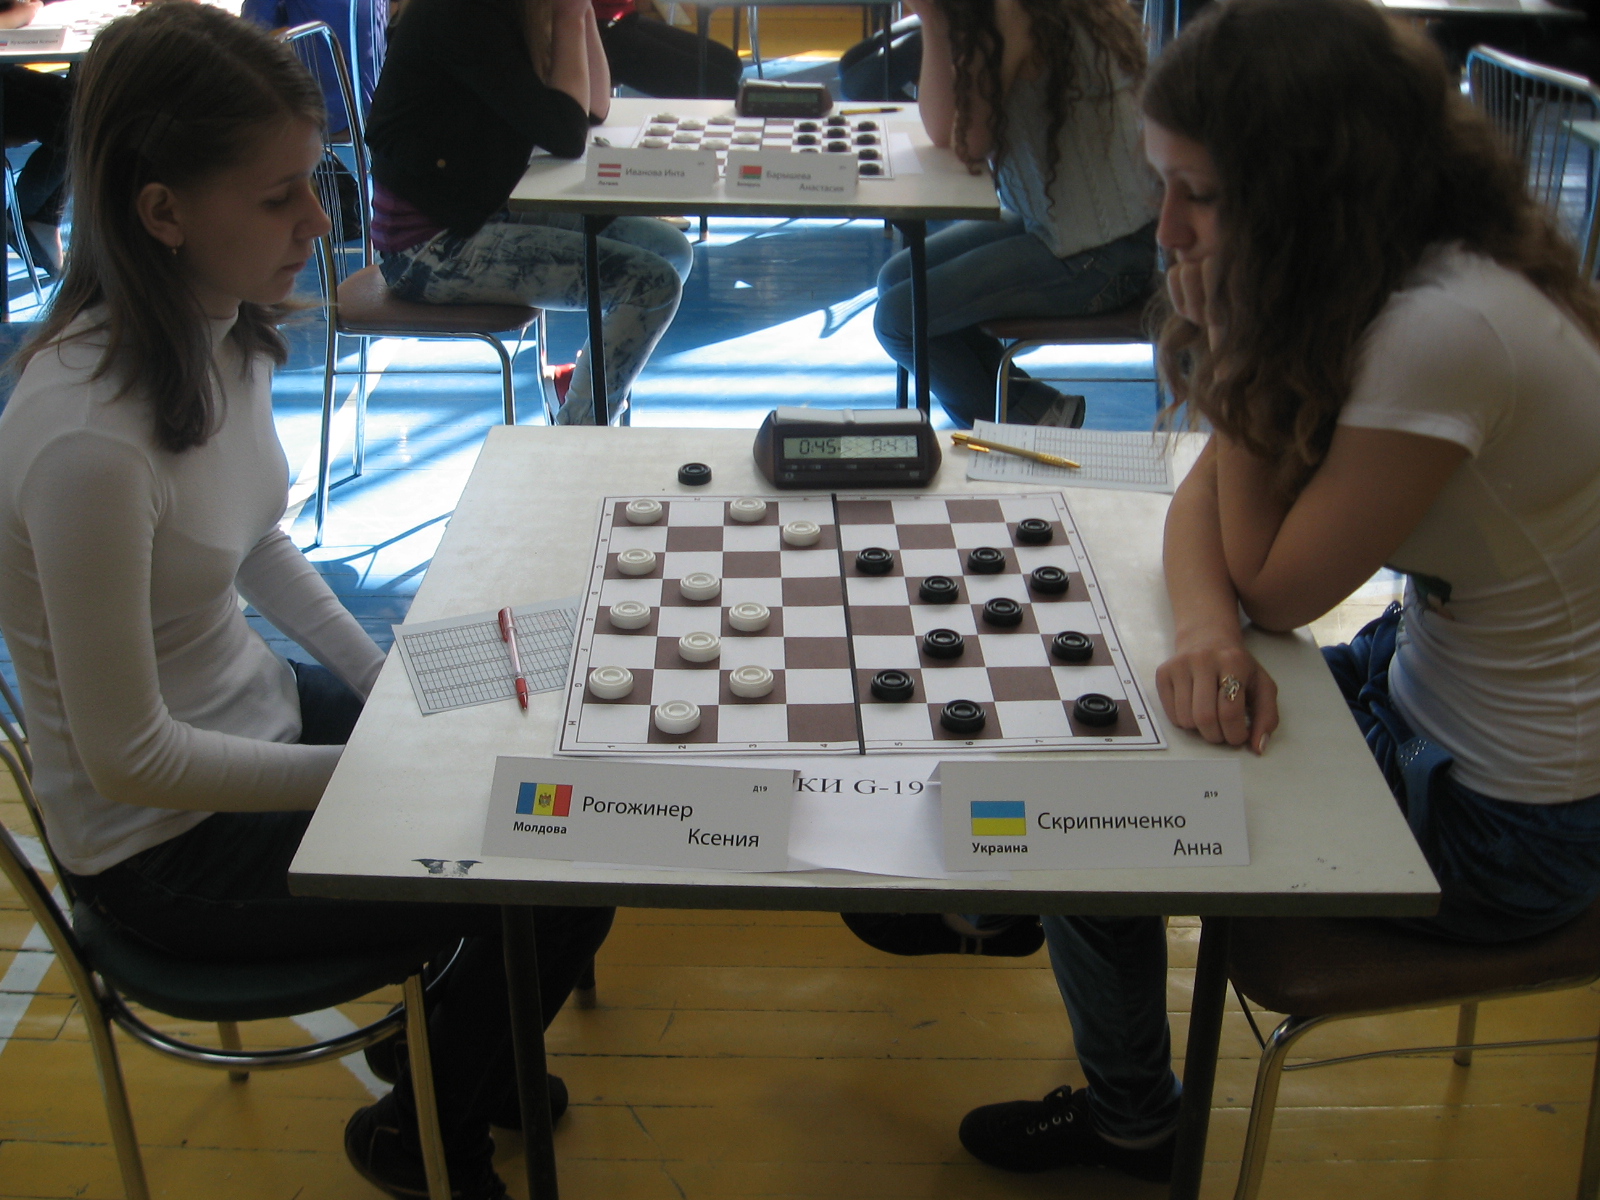 Нажмите для просмотра картинки в полный размер -  Фотогалерея - Чемпионат(Первенство) Европы по шашкам -64 среди юношей и девушек. 2012(Борисов) - 2 й тур - 48.jpg